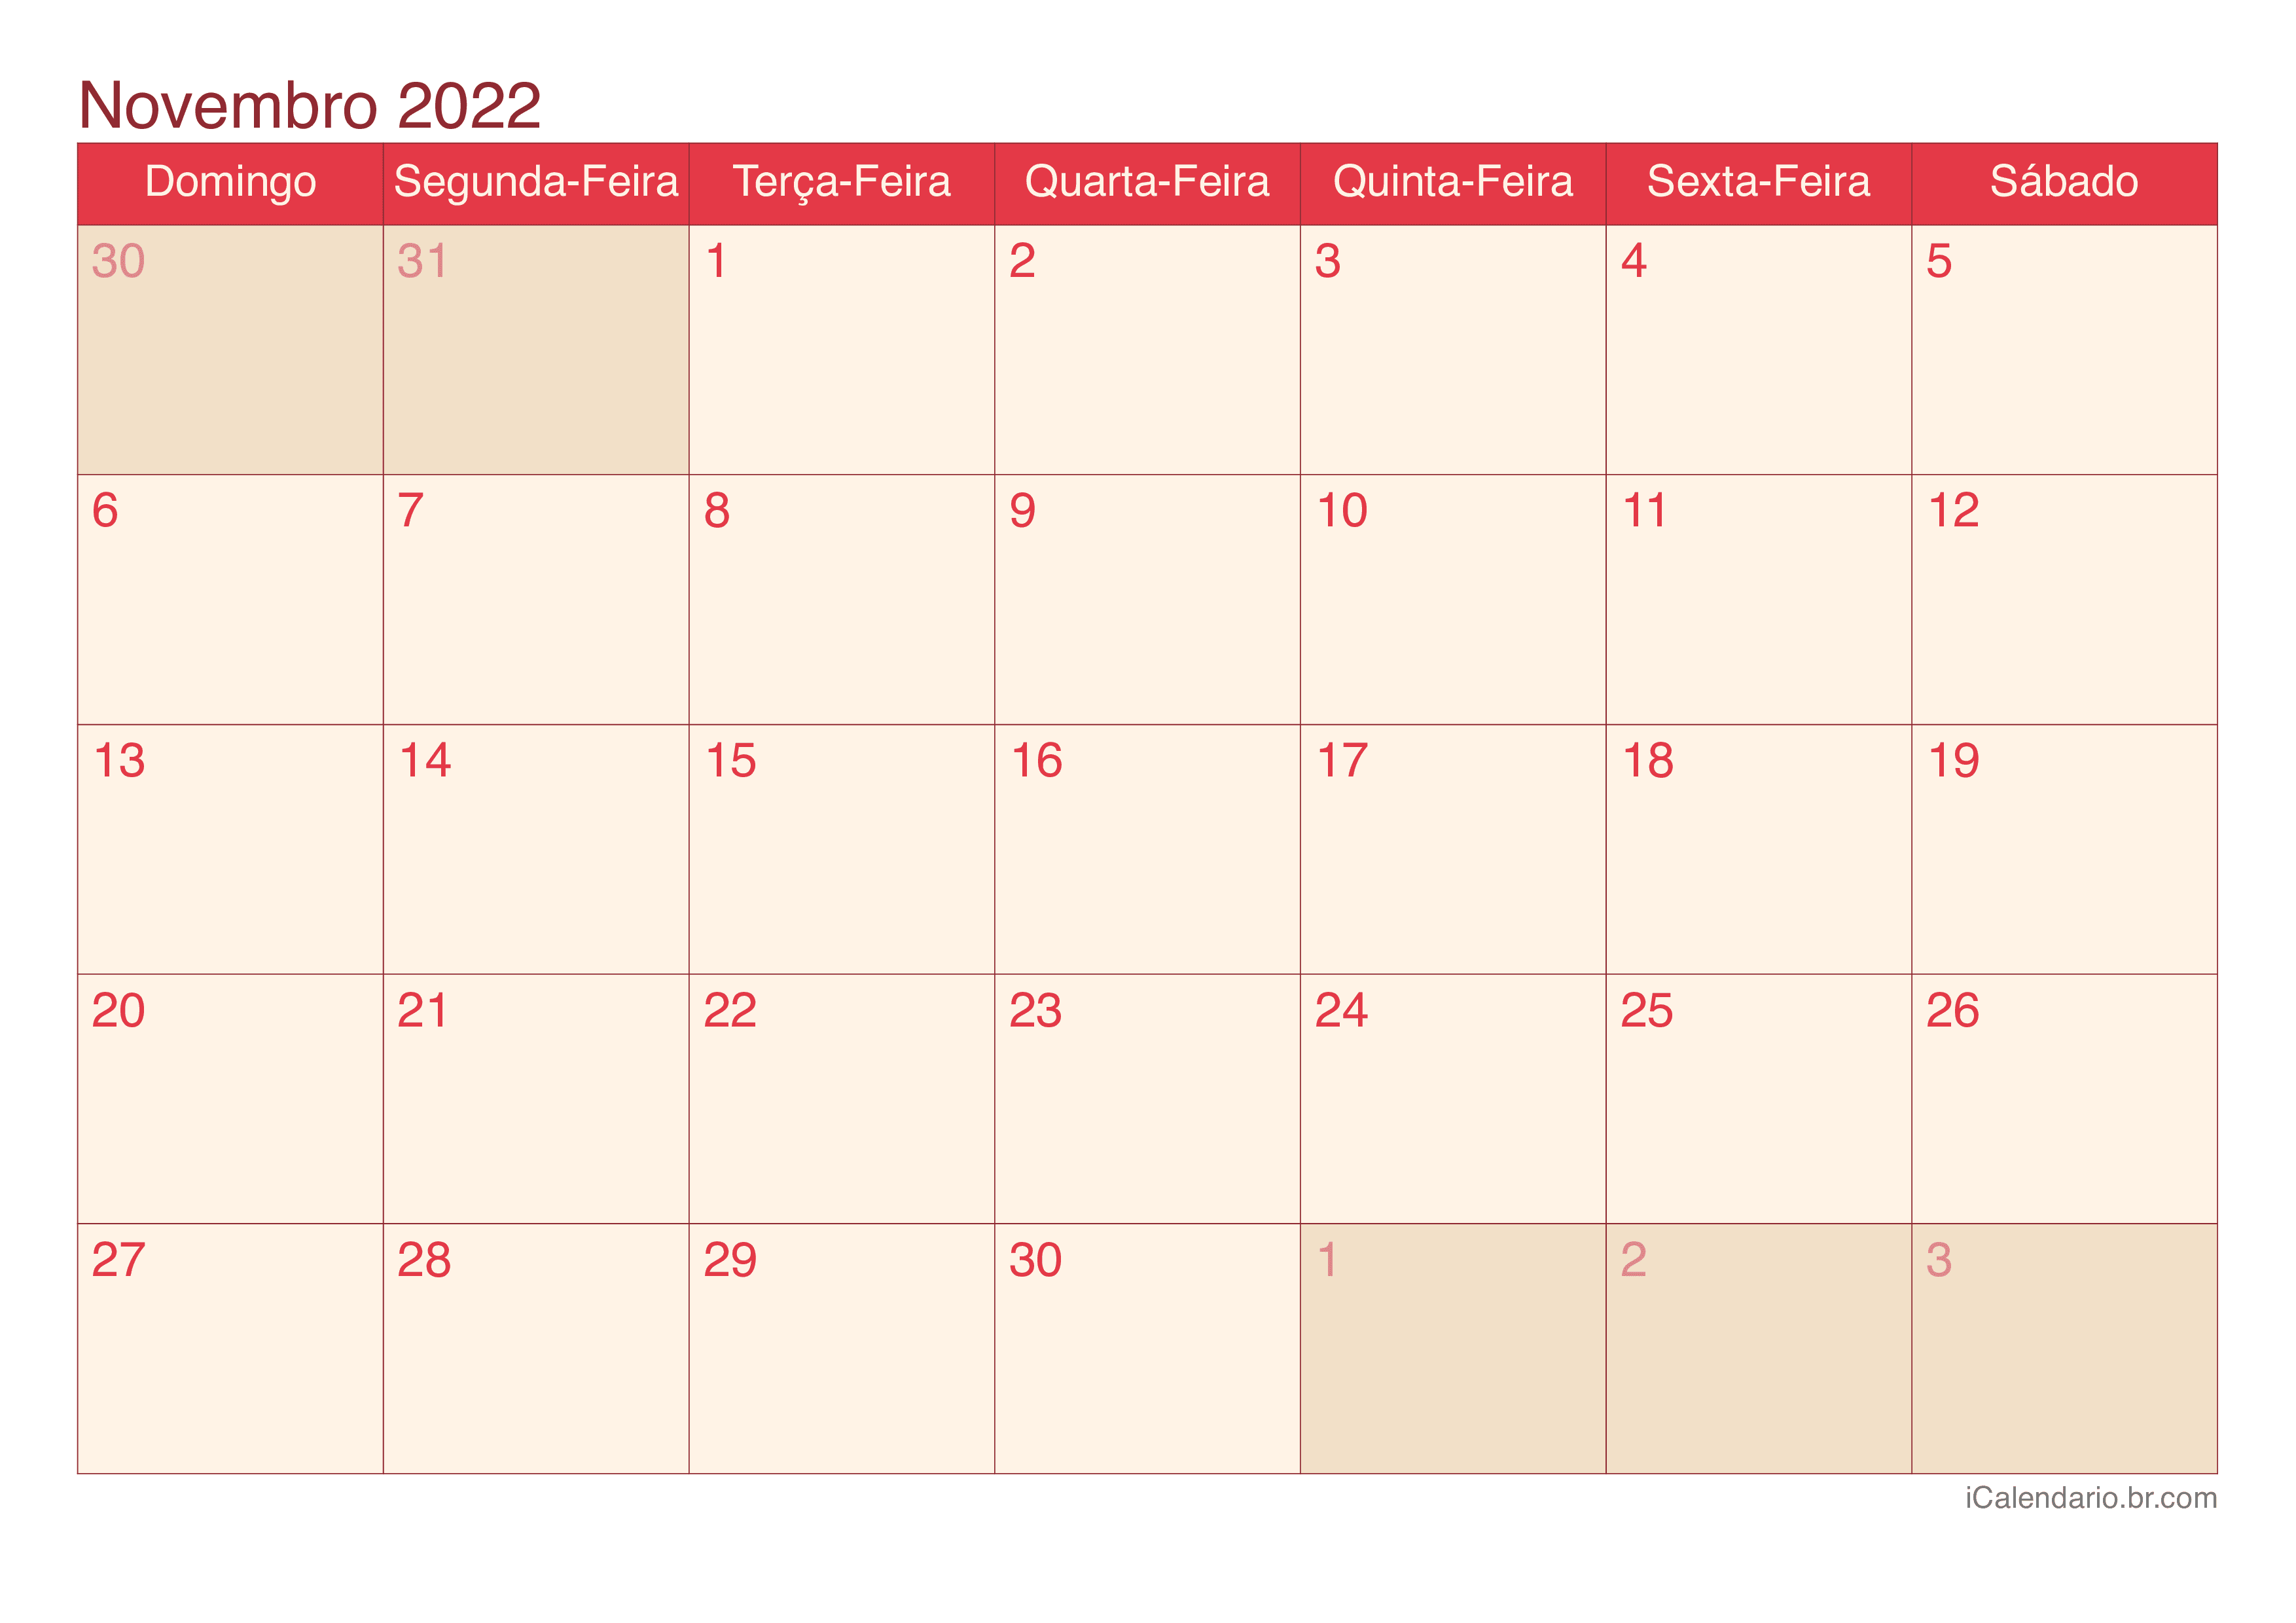 Calendário de novembro 2022 - Cherry